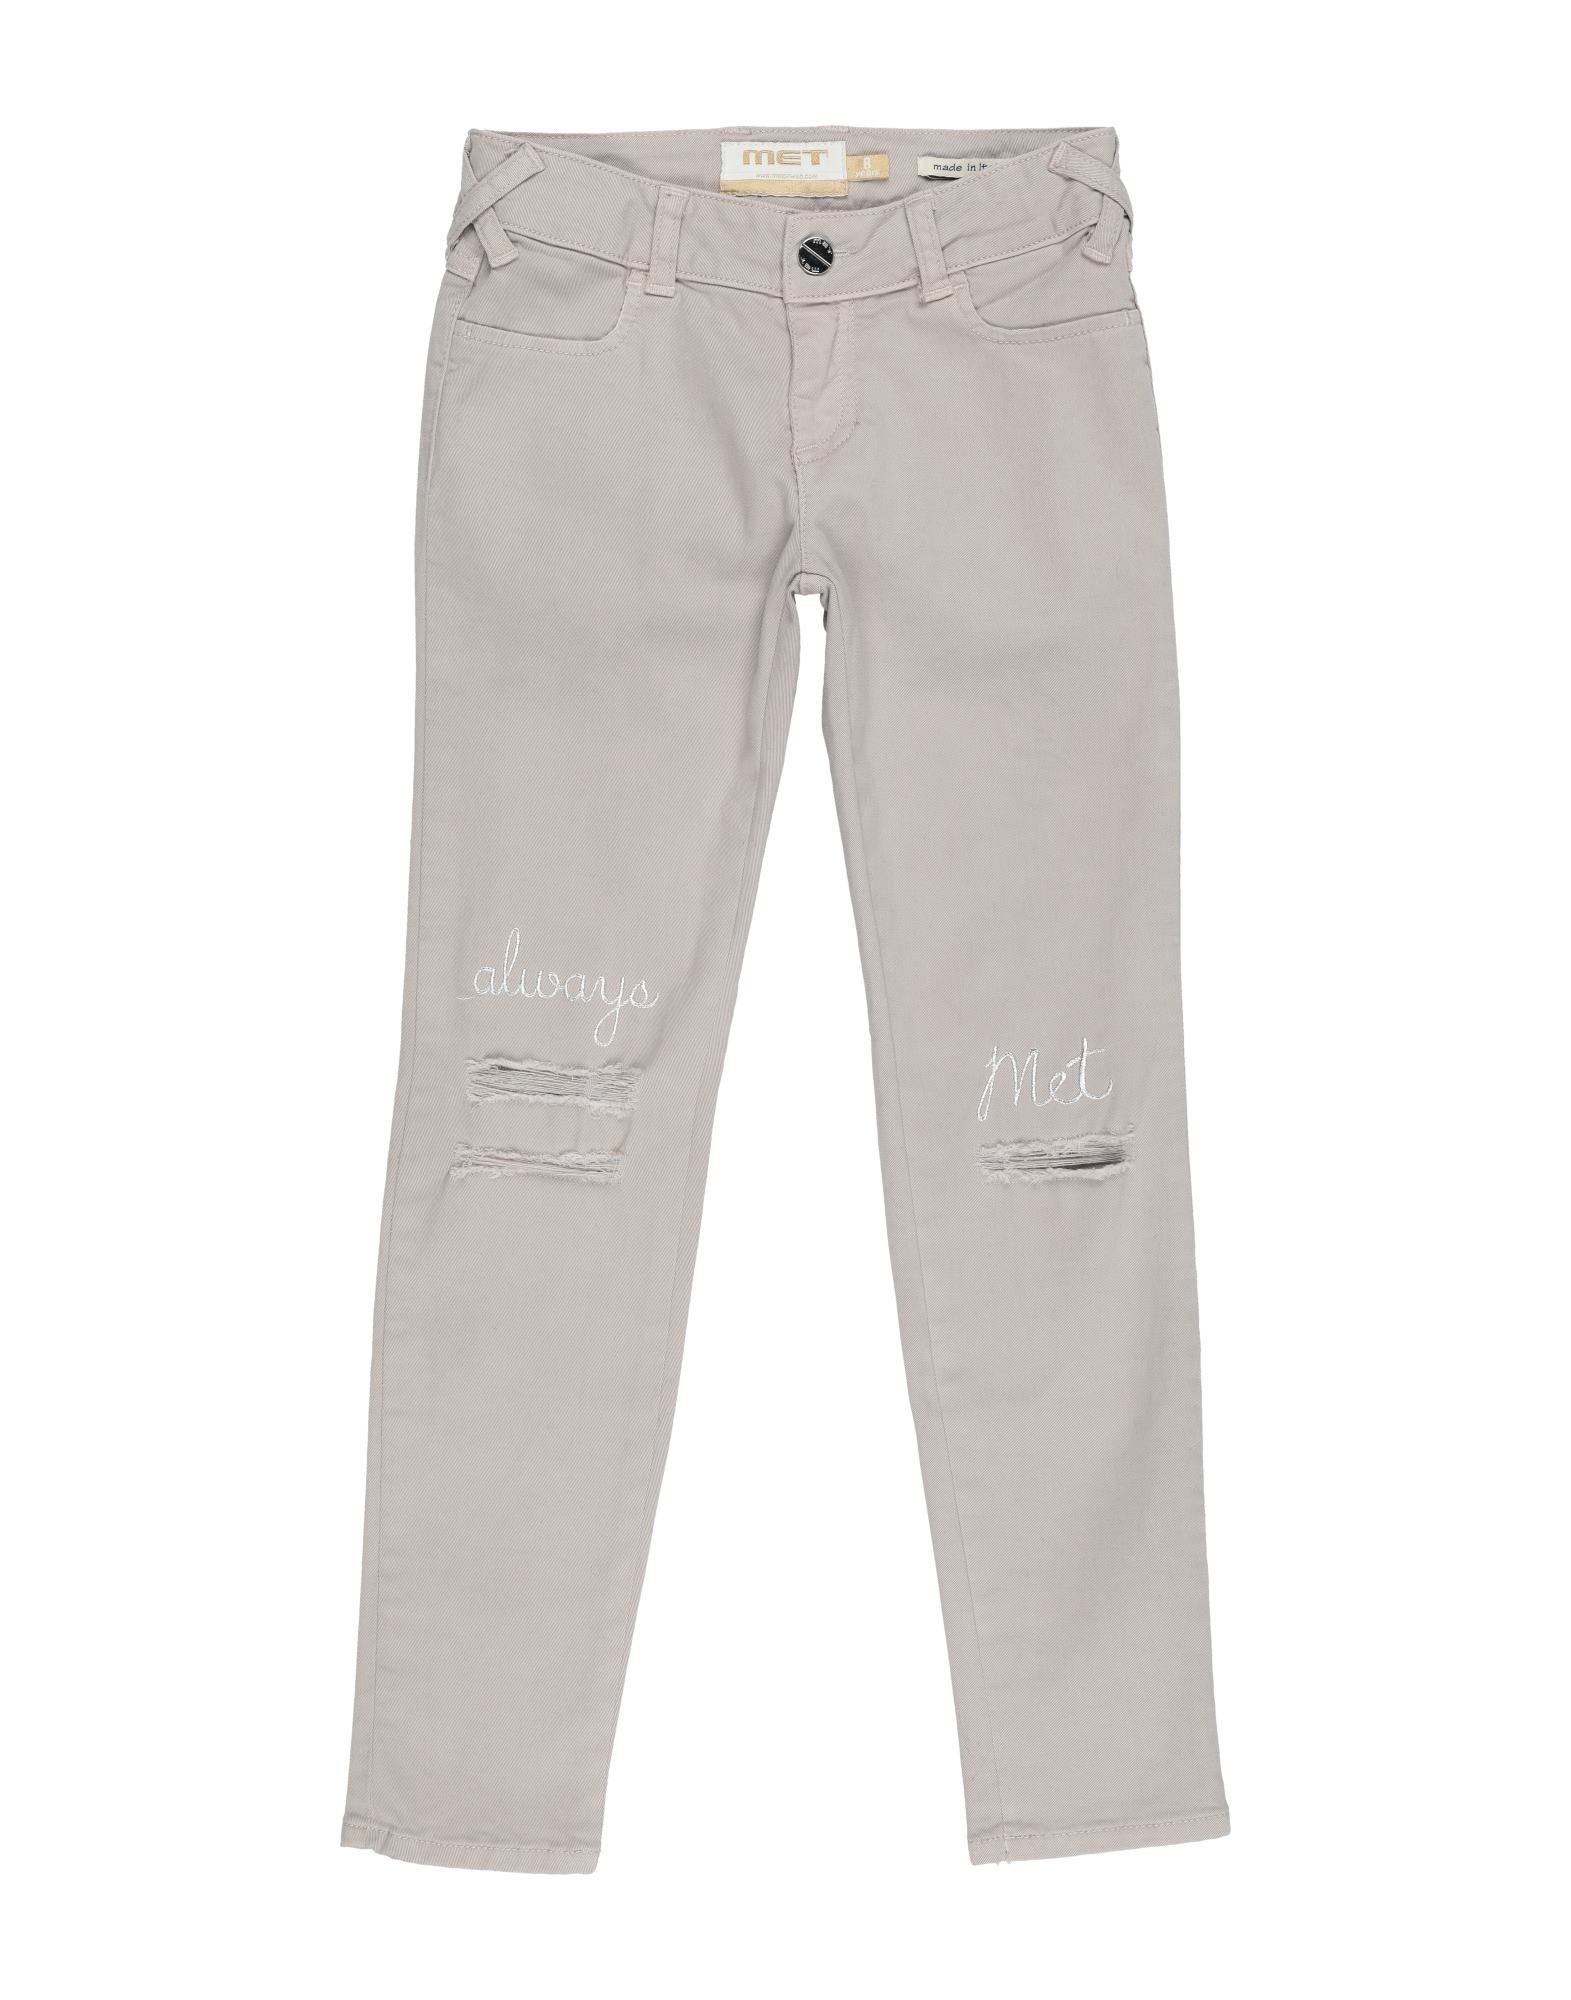 Met Jeans Kids' Casual Pants In Light Grey